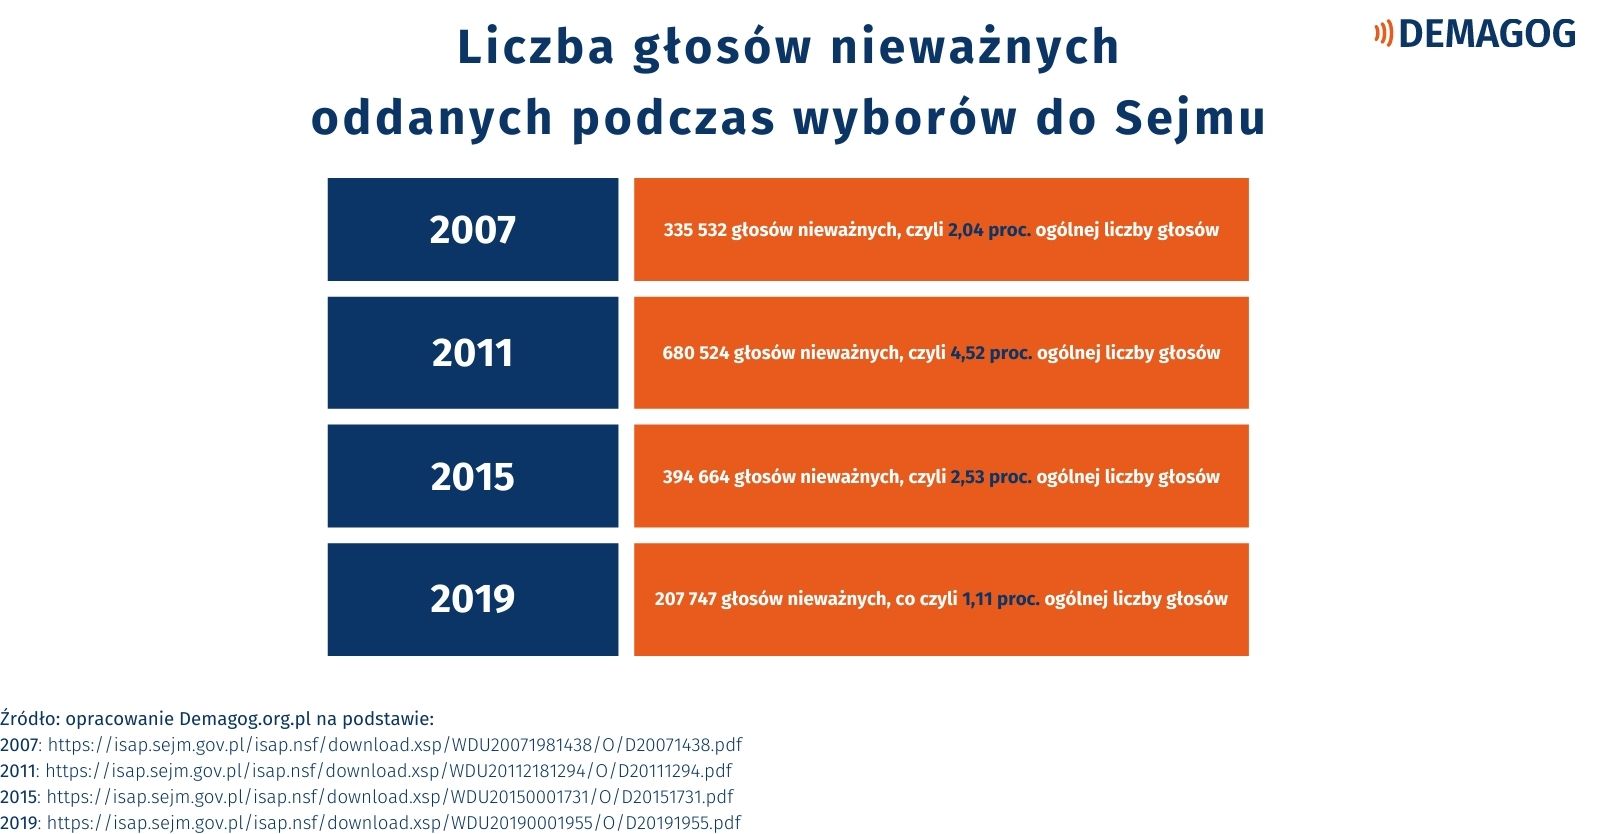 Obrazek pokazuje liczbę głosów nieważnych oddanych podczas wyborów do Sejmu.